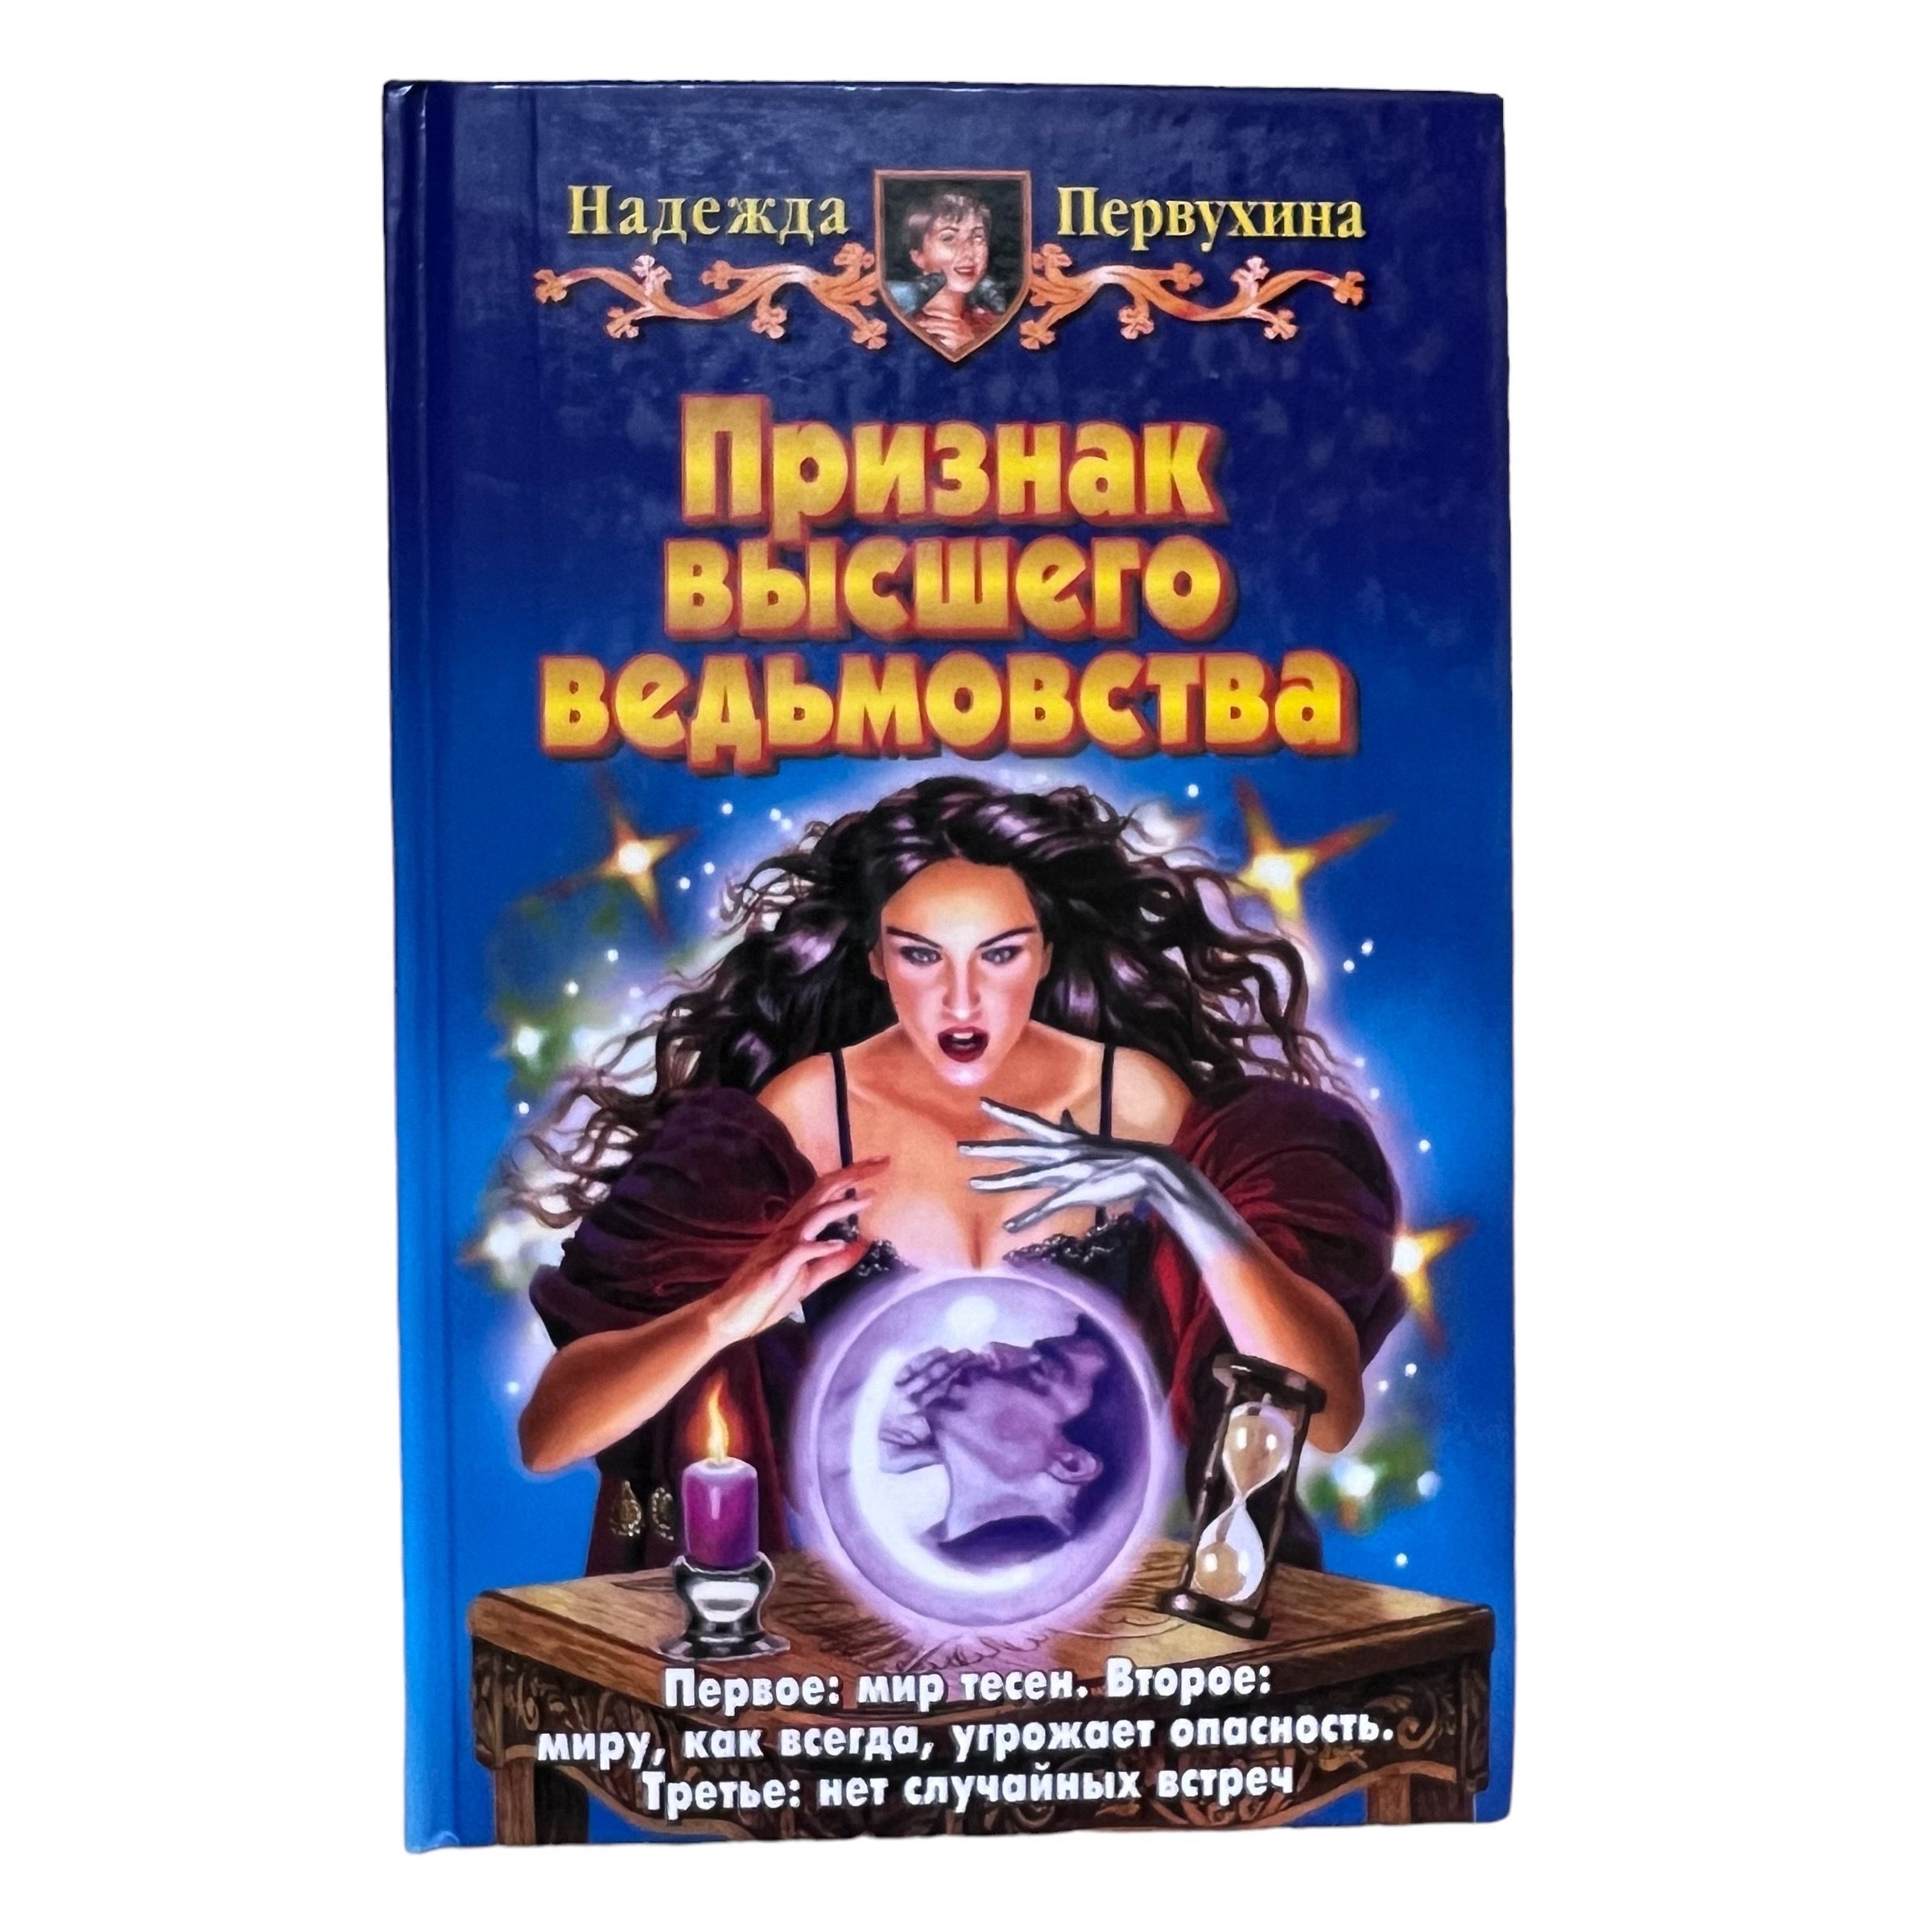 Слушать аудиокнигу андрея первухина ученик 11. Купить в Новосибирске книгу Петербург для детей Первухина.